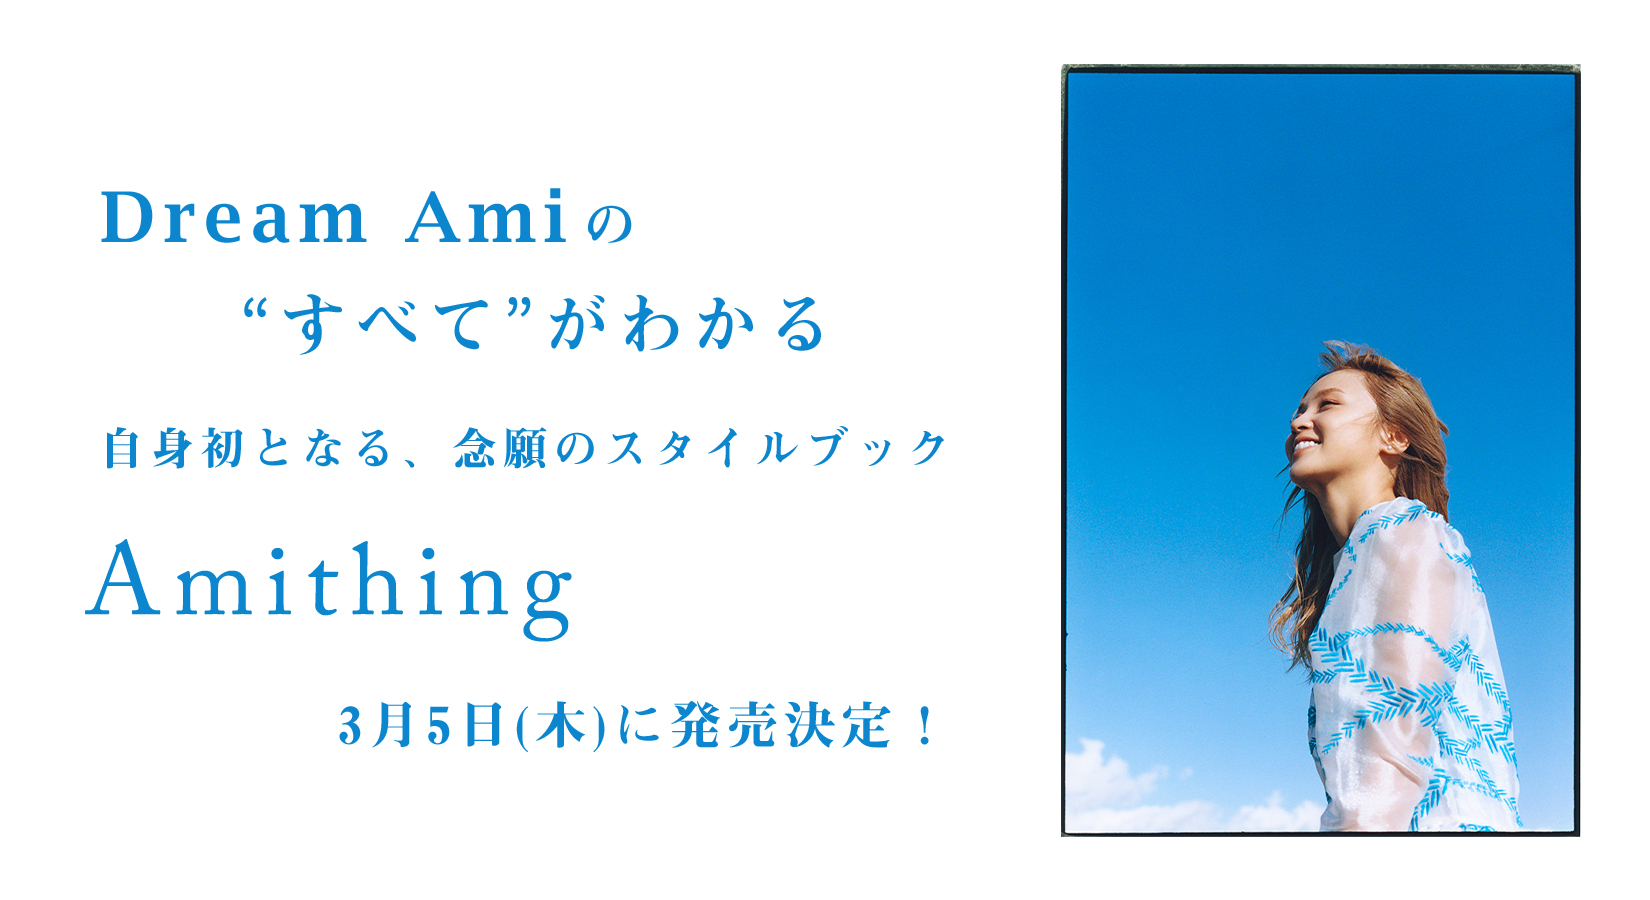 Dream Ami初のスタイルブック「Amithing」3月5日(木)発売決定！